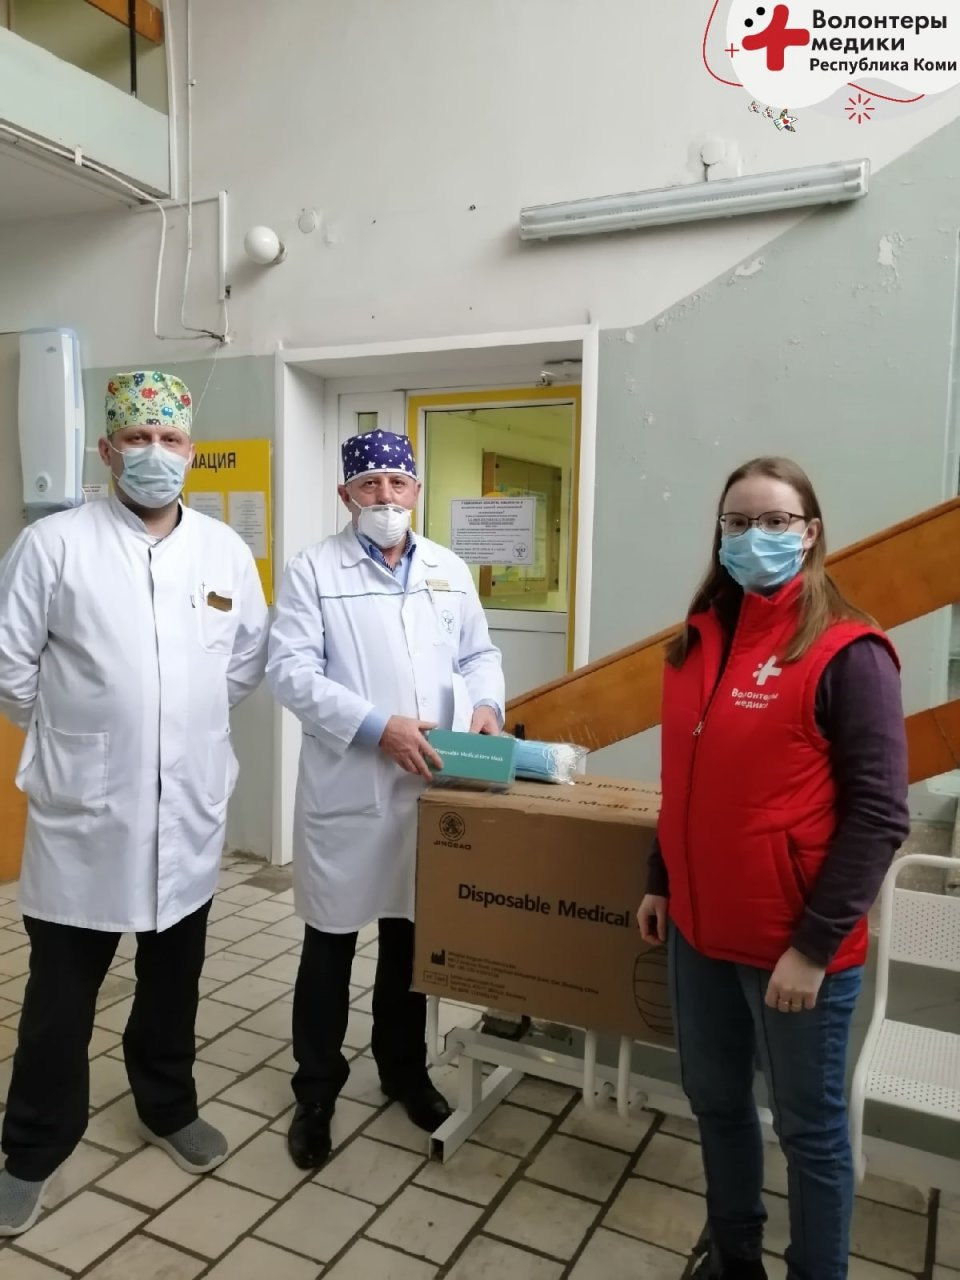 Сбербанк в Коми передал «Волонтерам-медикам» 6000 масок